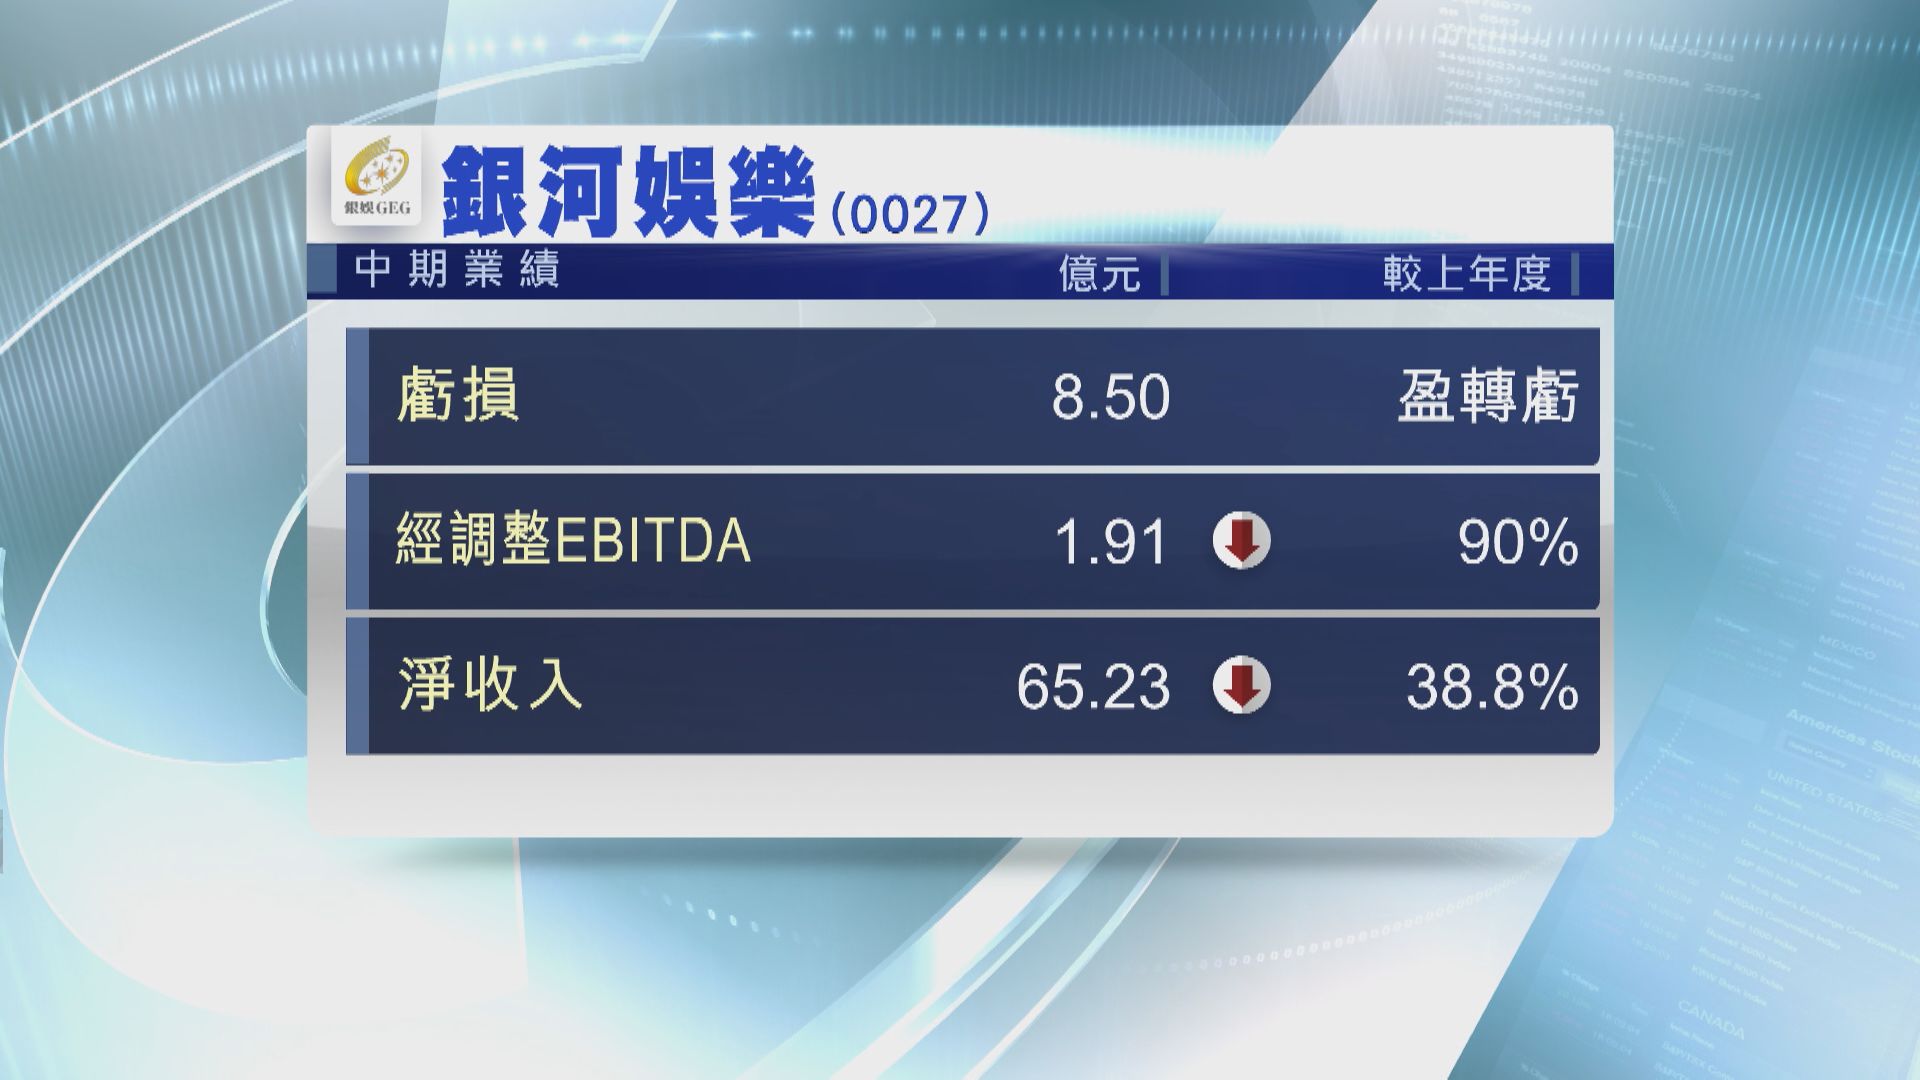 【藍籌業績】銀娛上半年轉蝕8.5億  EBITDA大跌90%